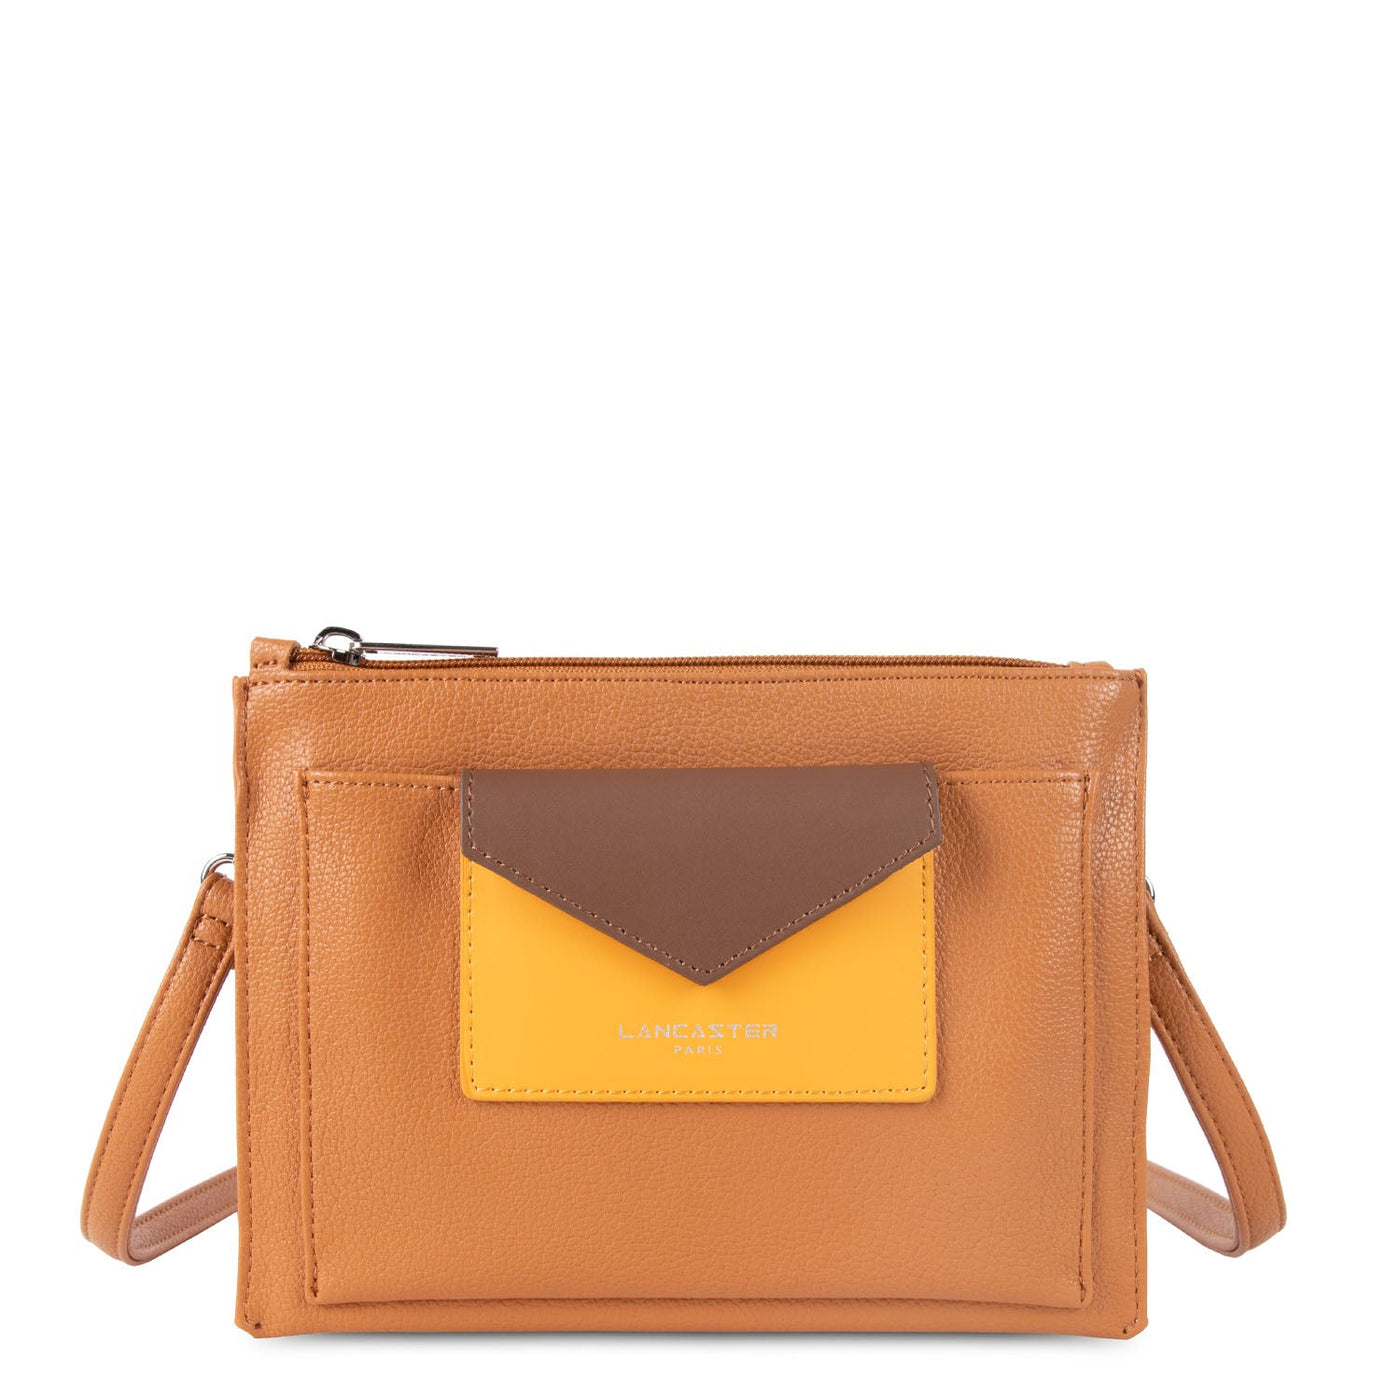 crossbody bag - maya #couleur_gold-jaune-vison